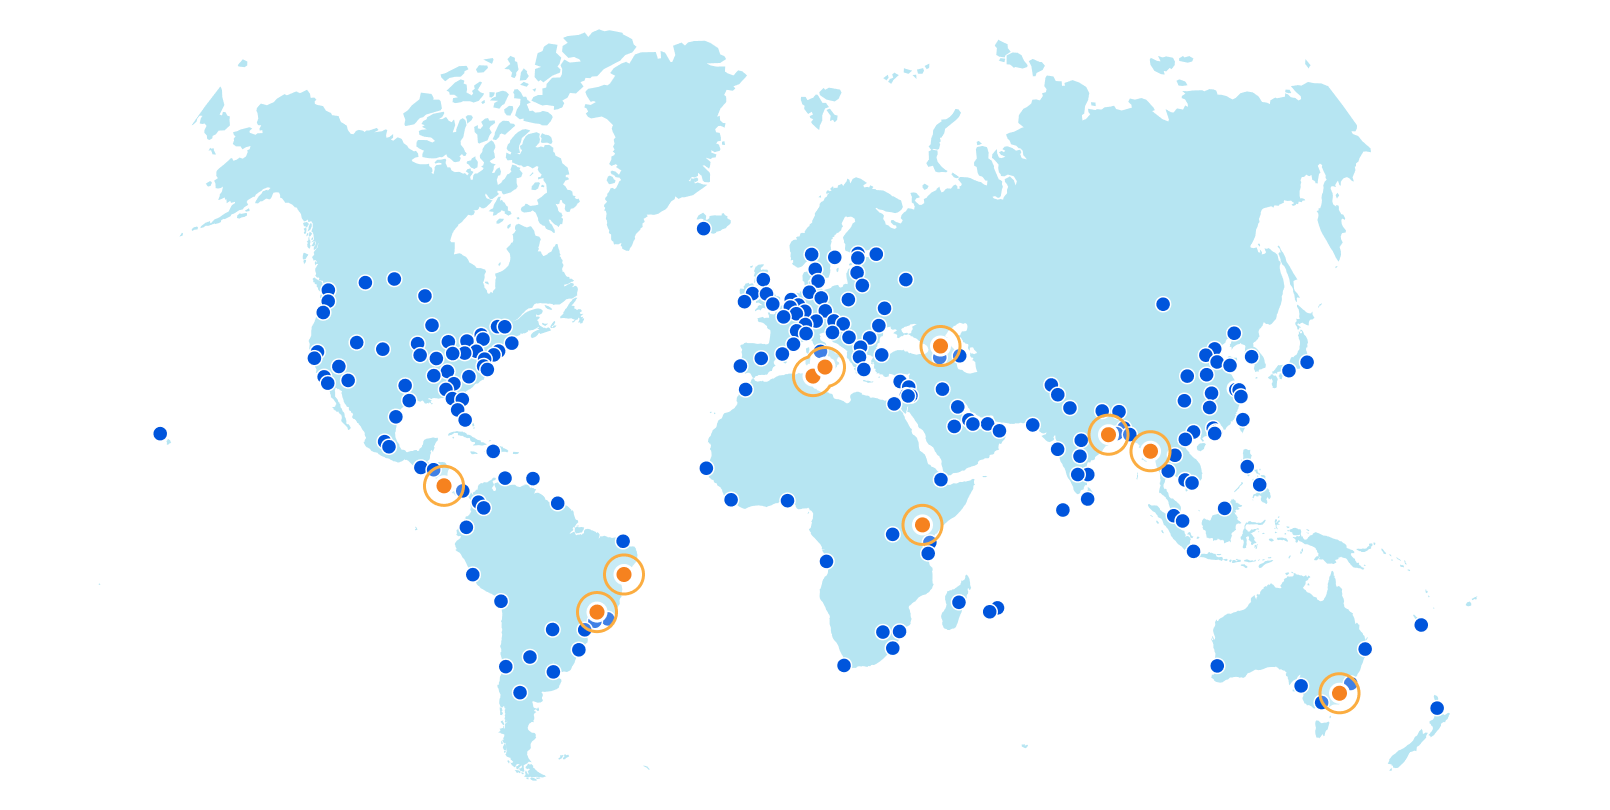 Сеть Cloudflare удваивает емкость ЦП и расширяется до десяти новых городов в четырех новых странах